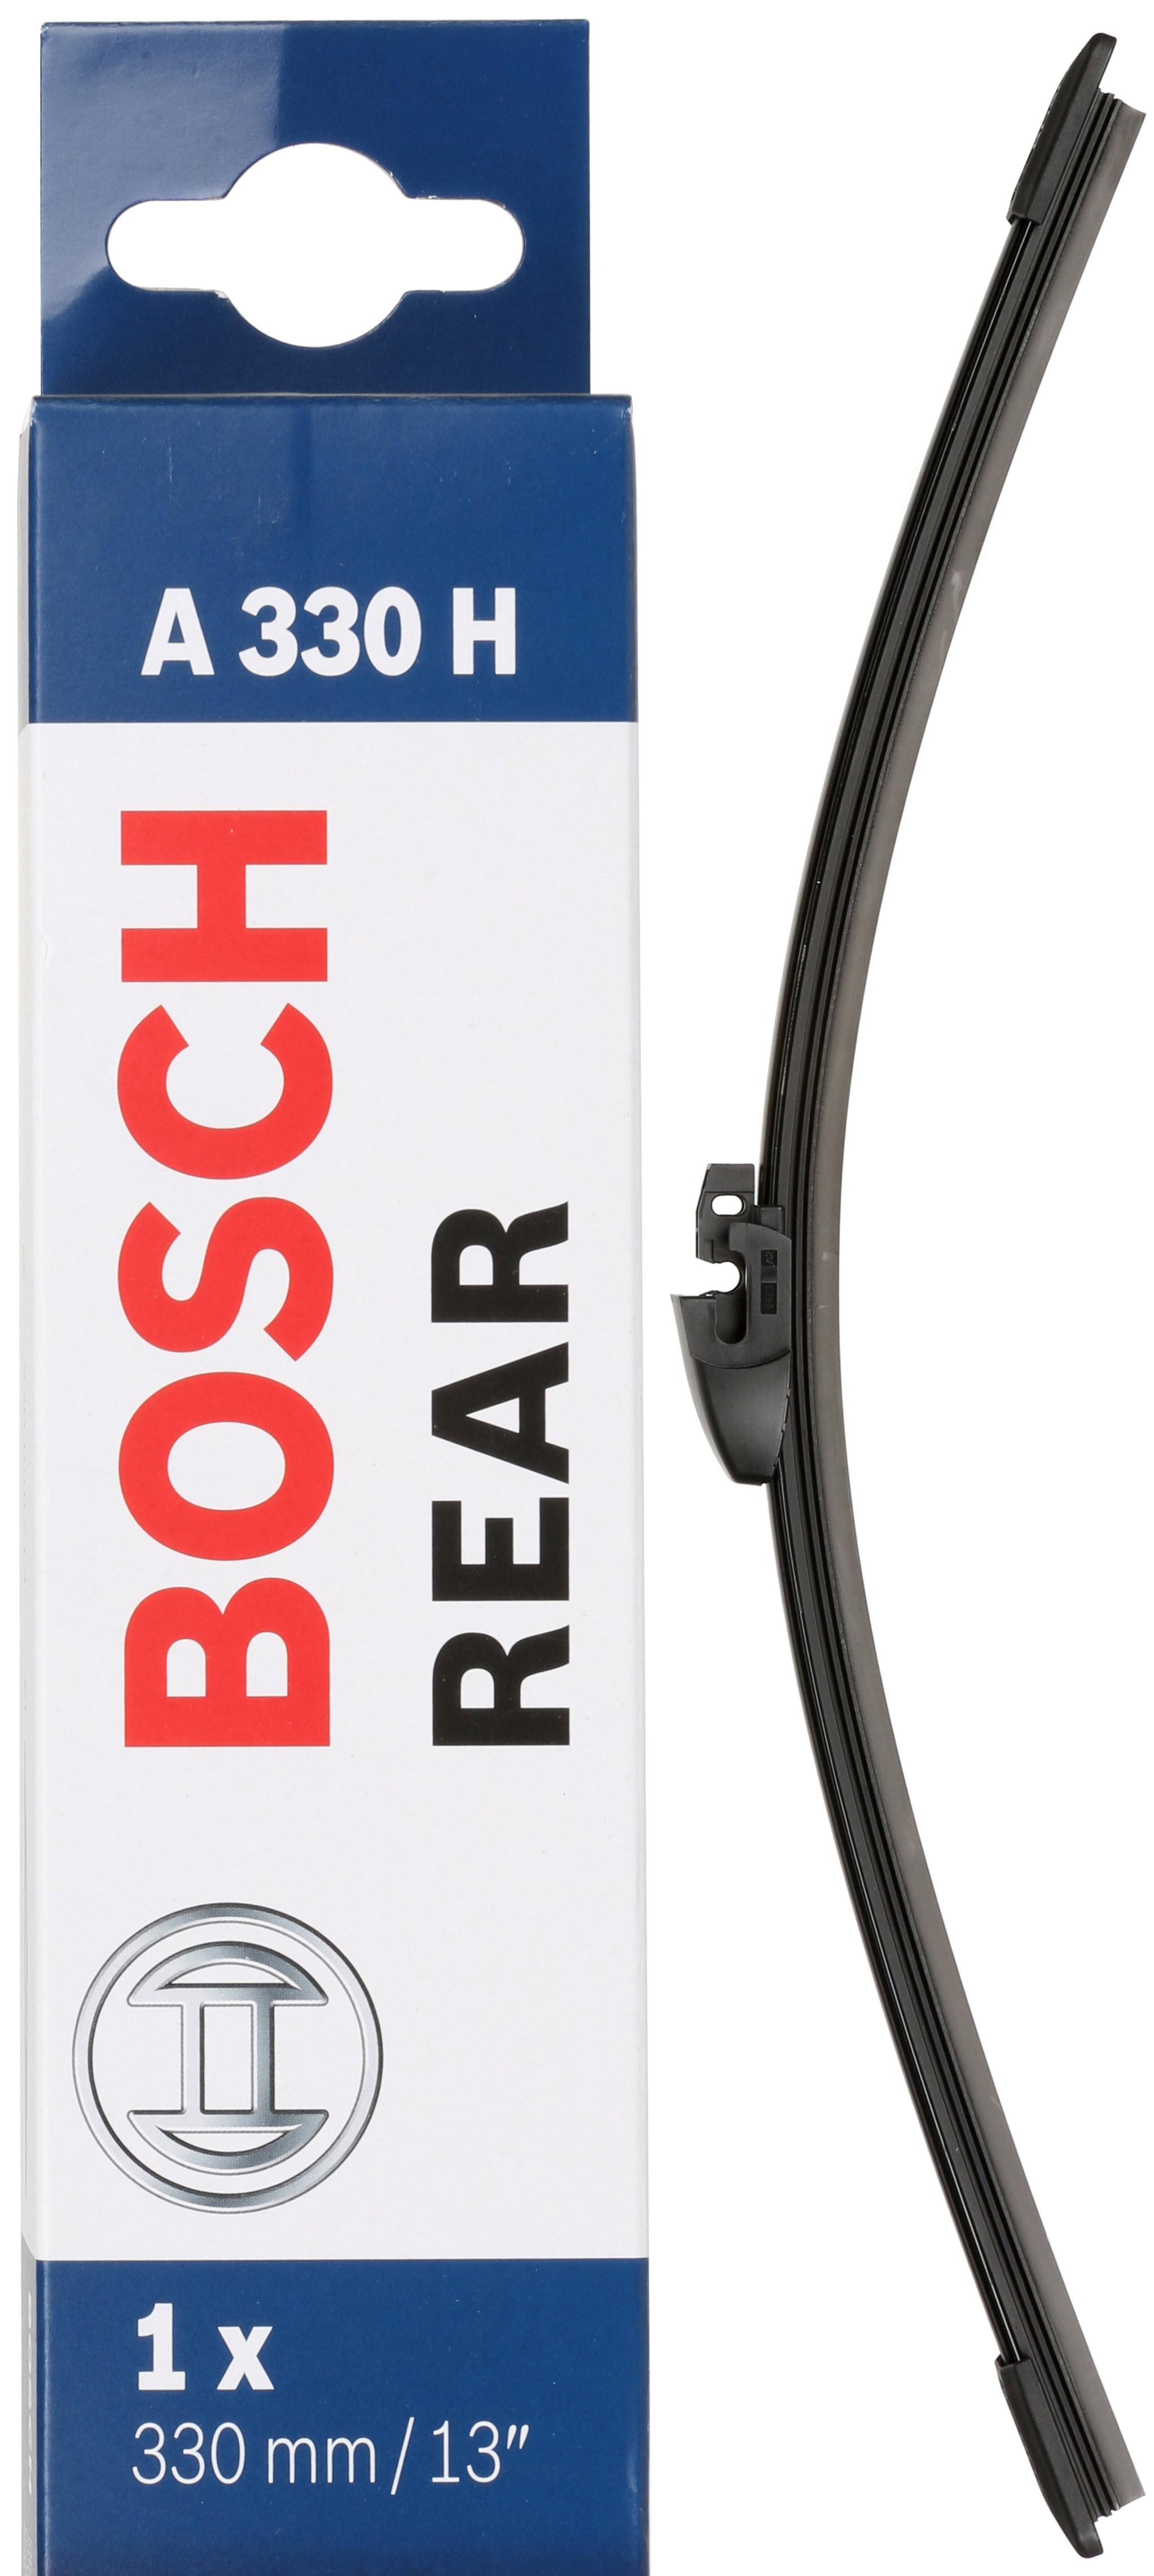 Bosch A330H Wiper Blade - Single